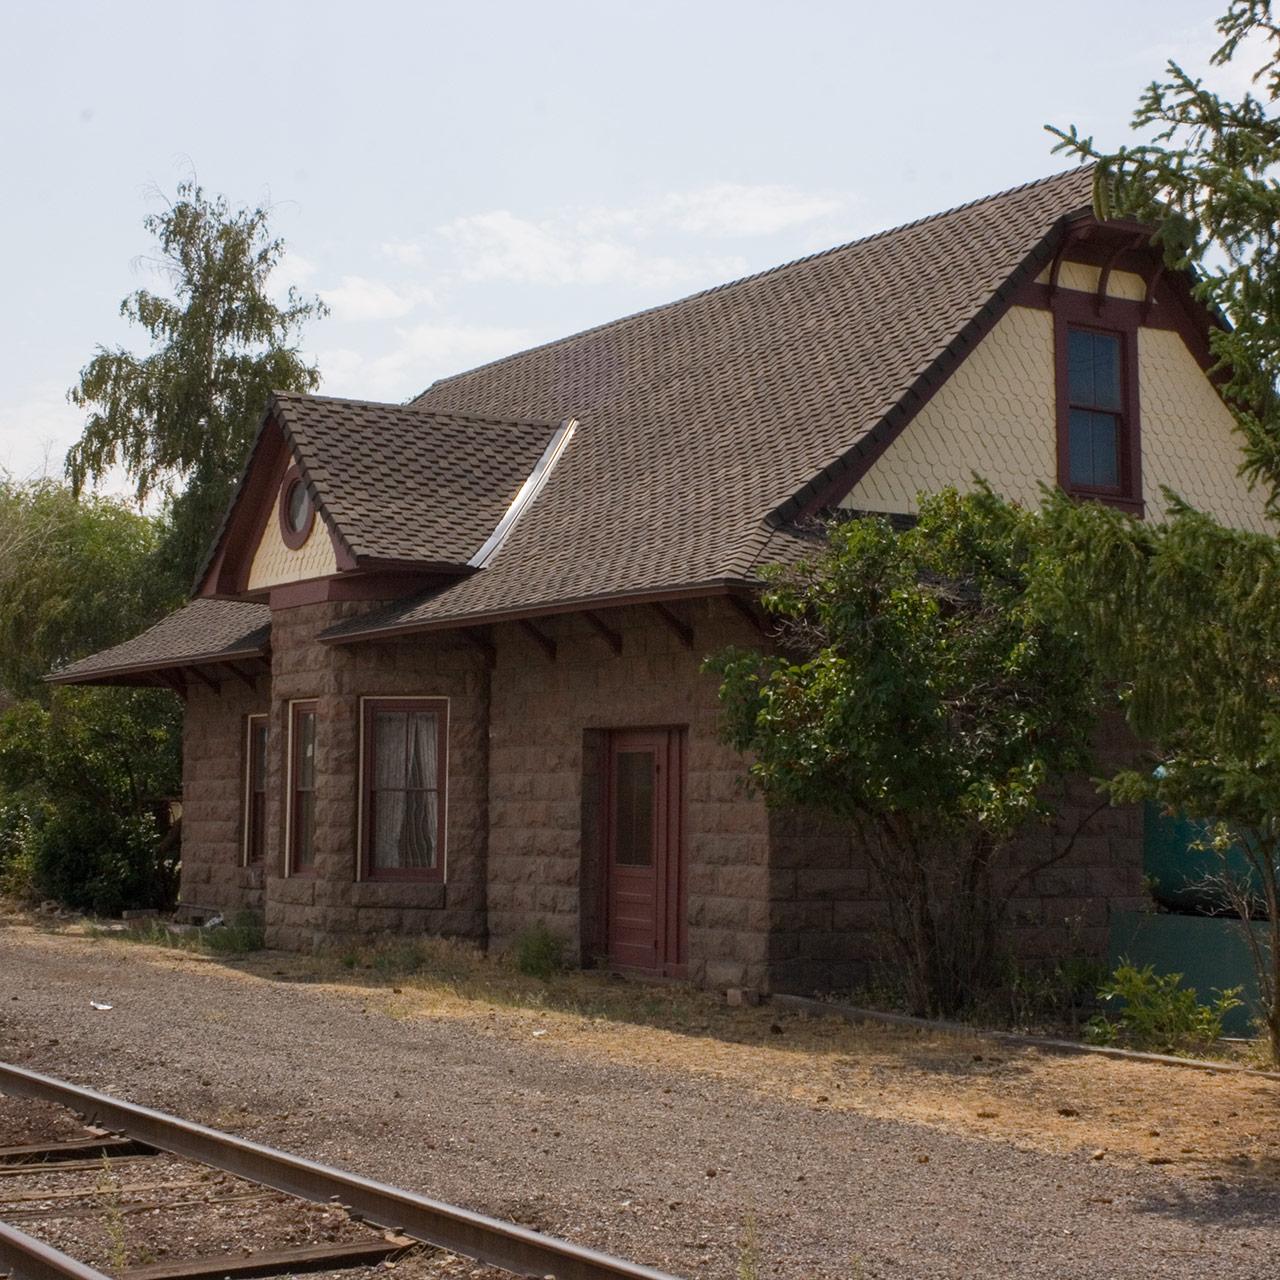 Alturas-depot-track-side